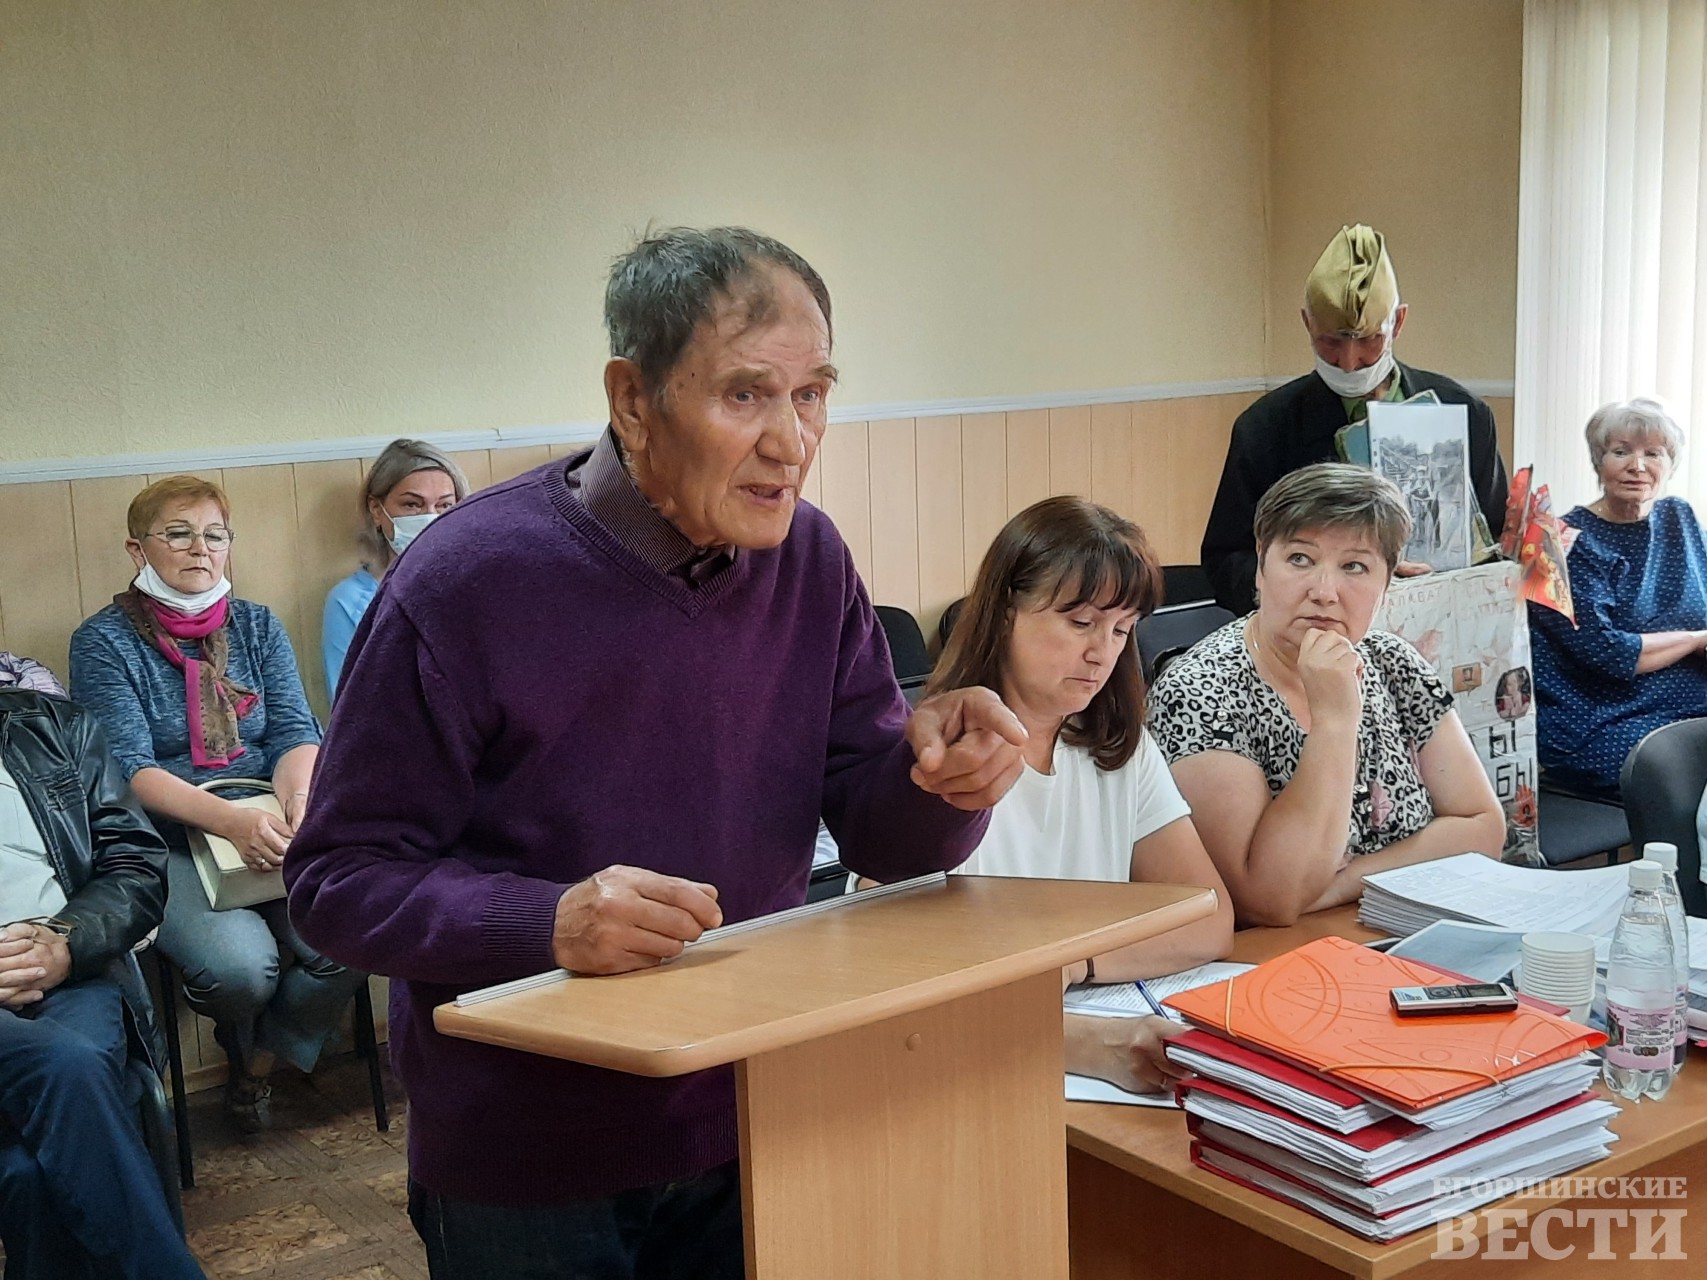 Михаил Ермаков, представитель инициативной группы села Мостовское. Фото: Михаил Дудин, 